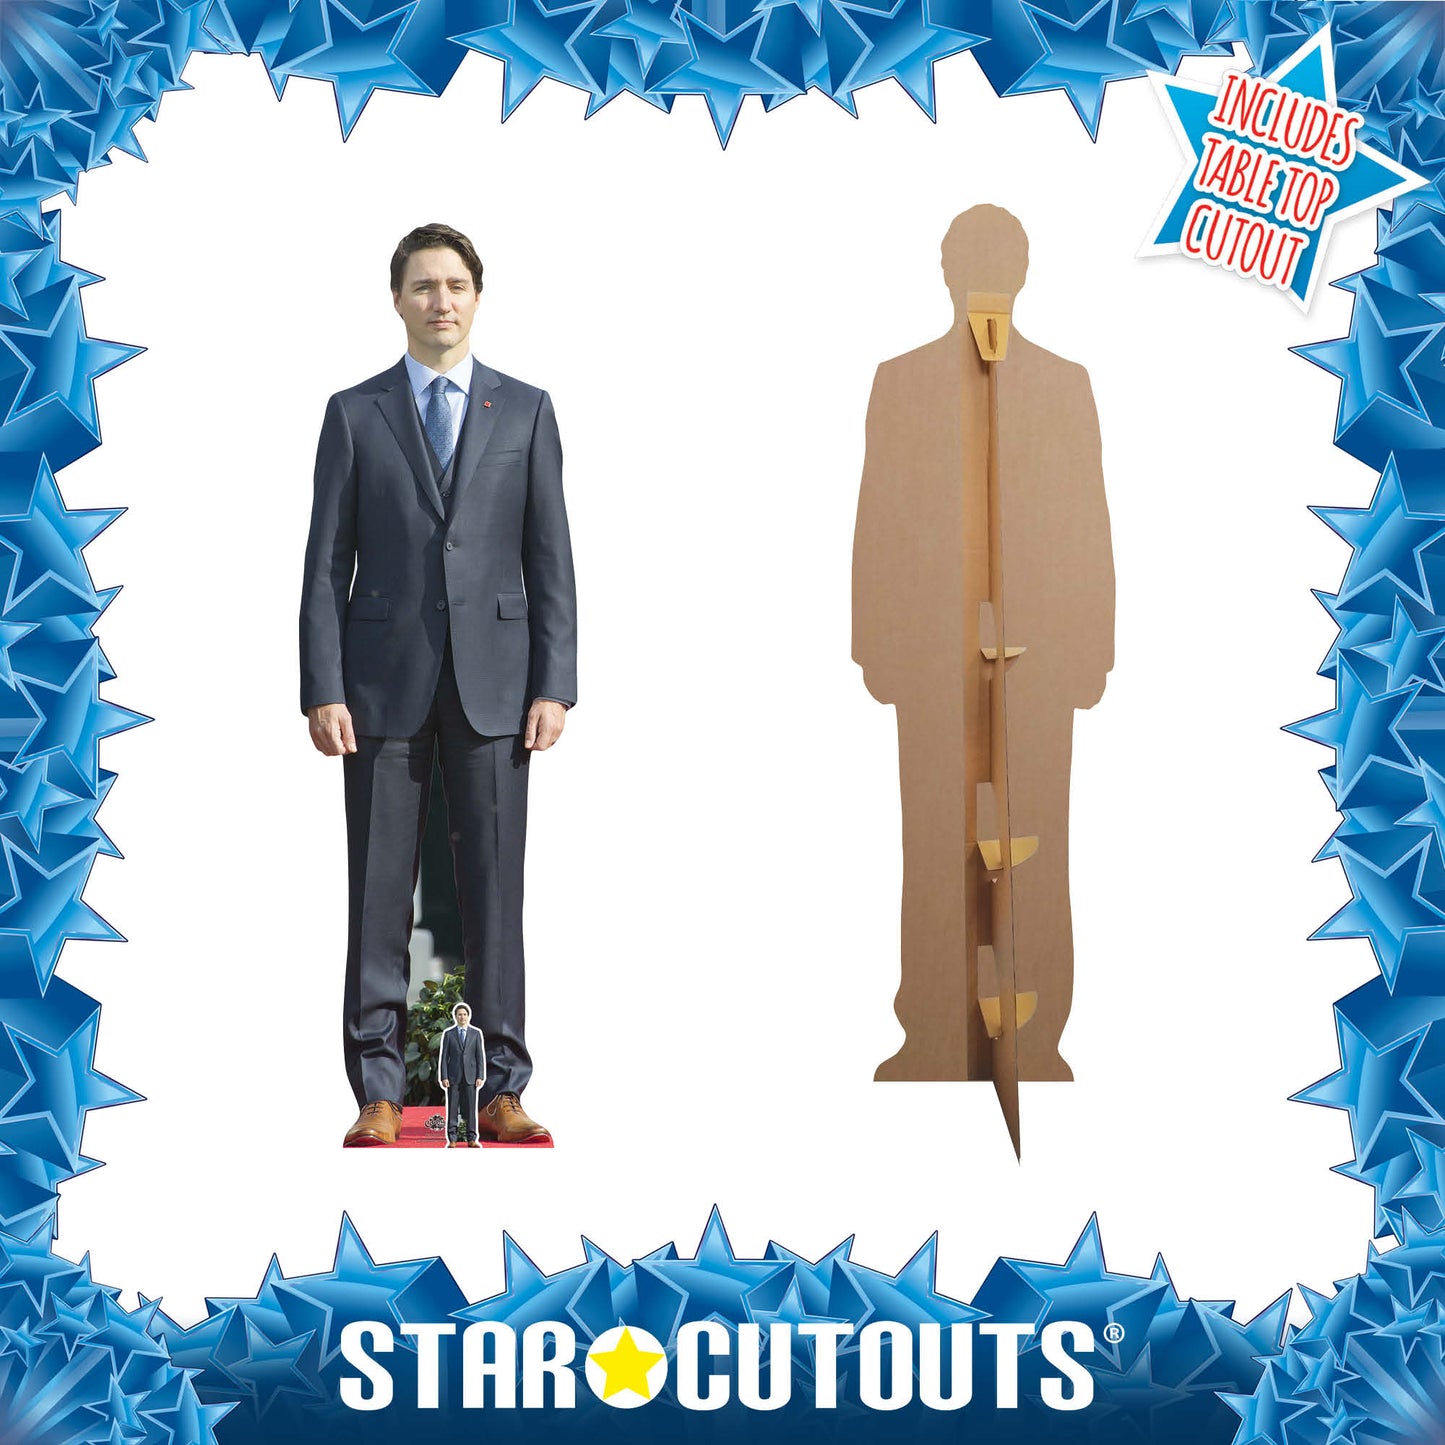 Justin Trudeau Cardboard Cutout Politician